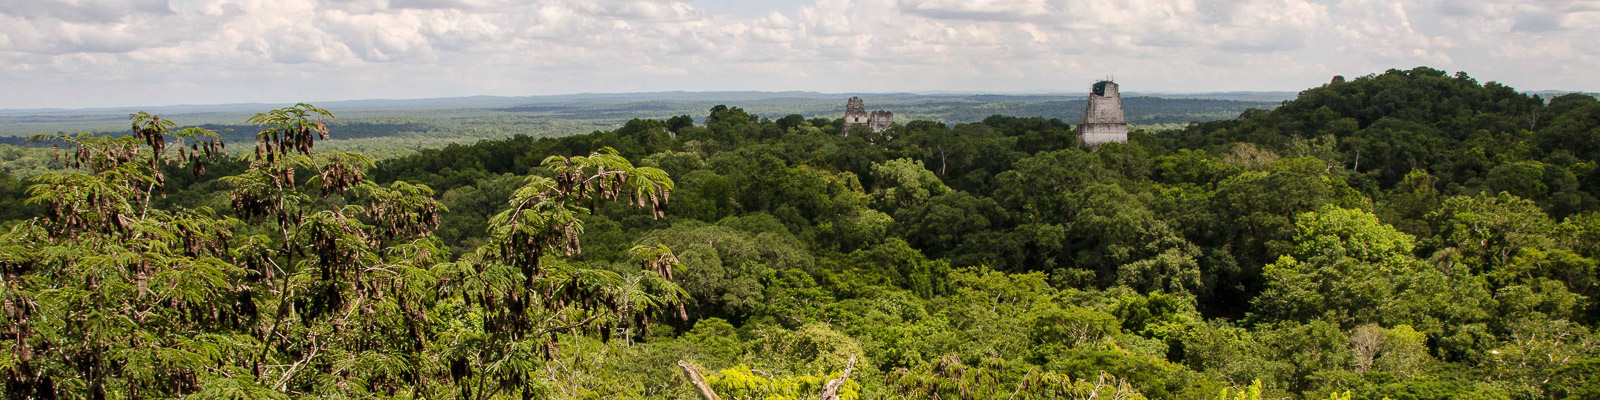 Guatemala Jungle Travel Vacation Tour